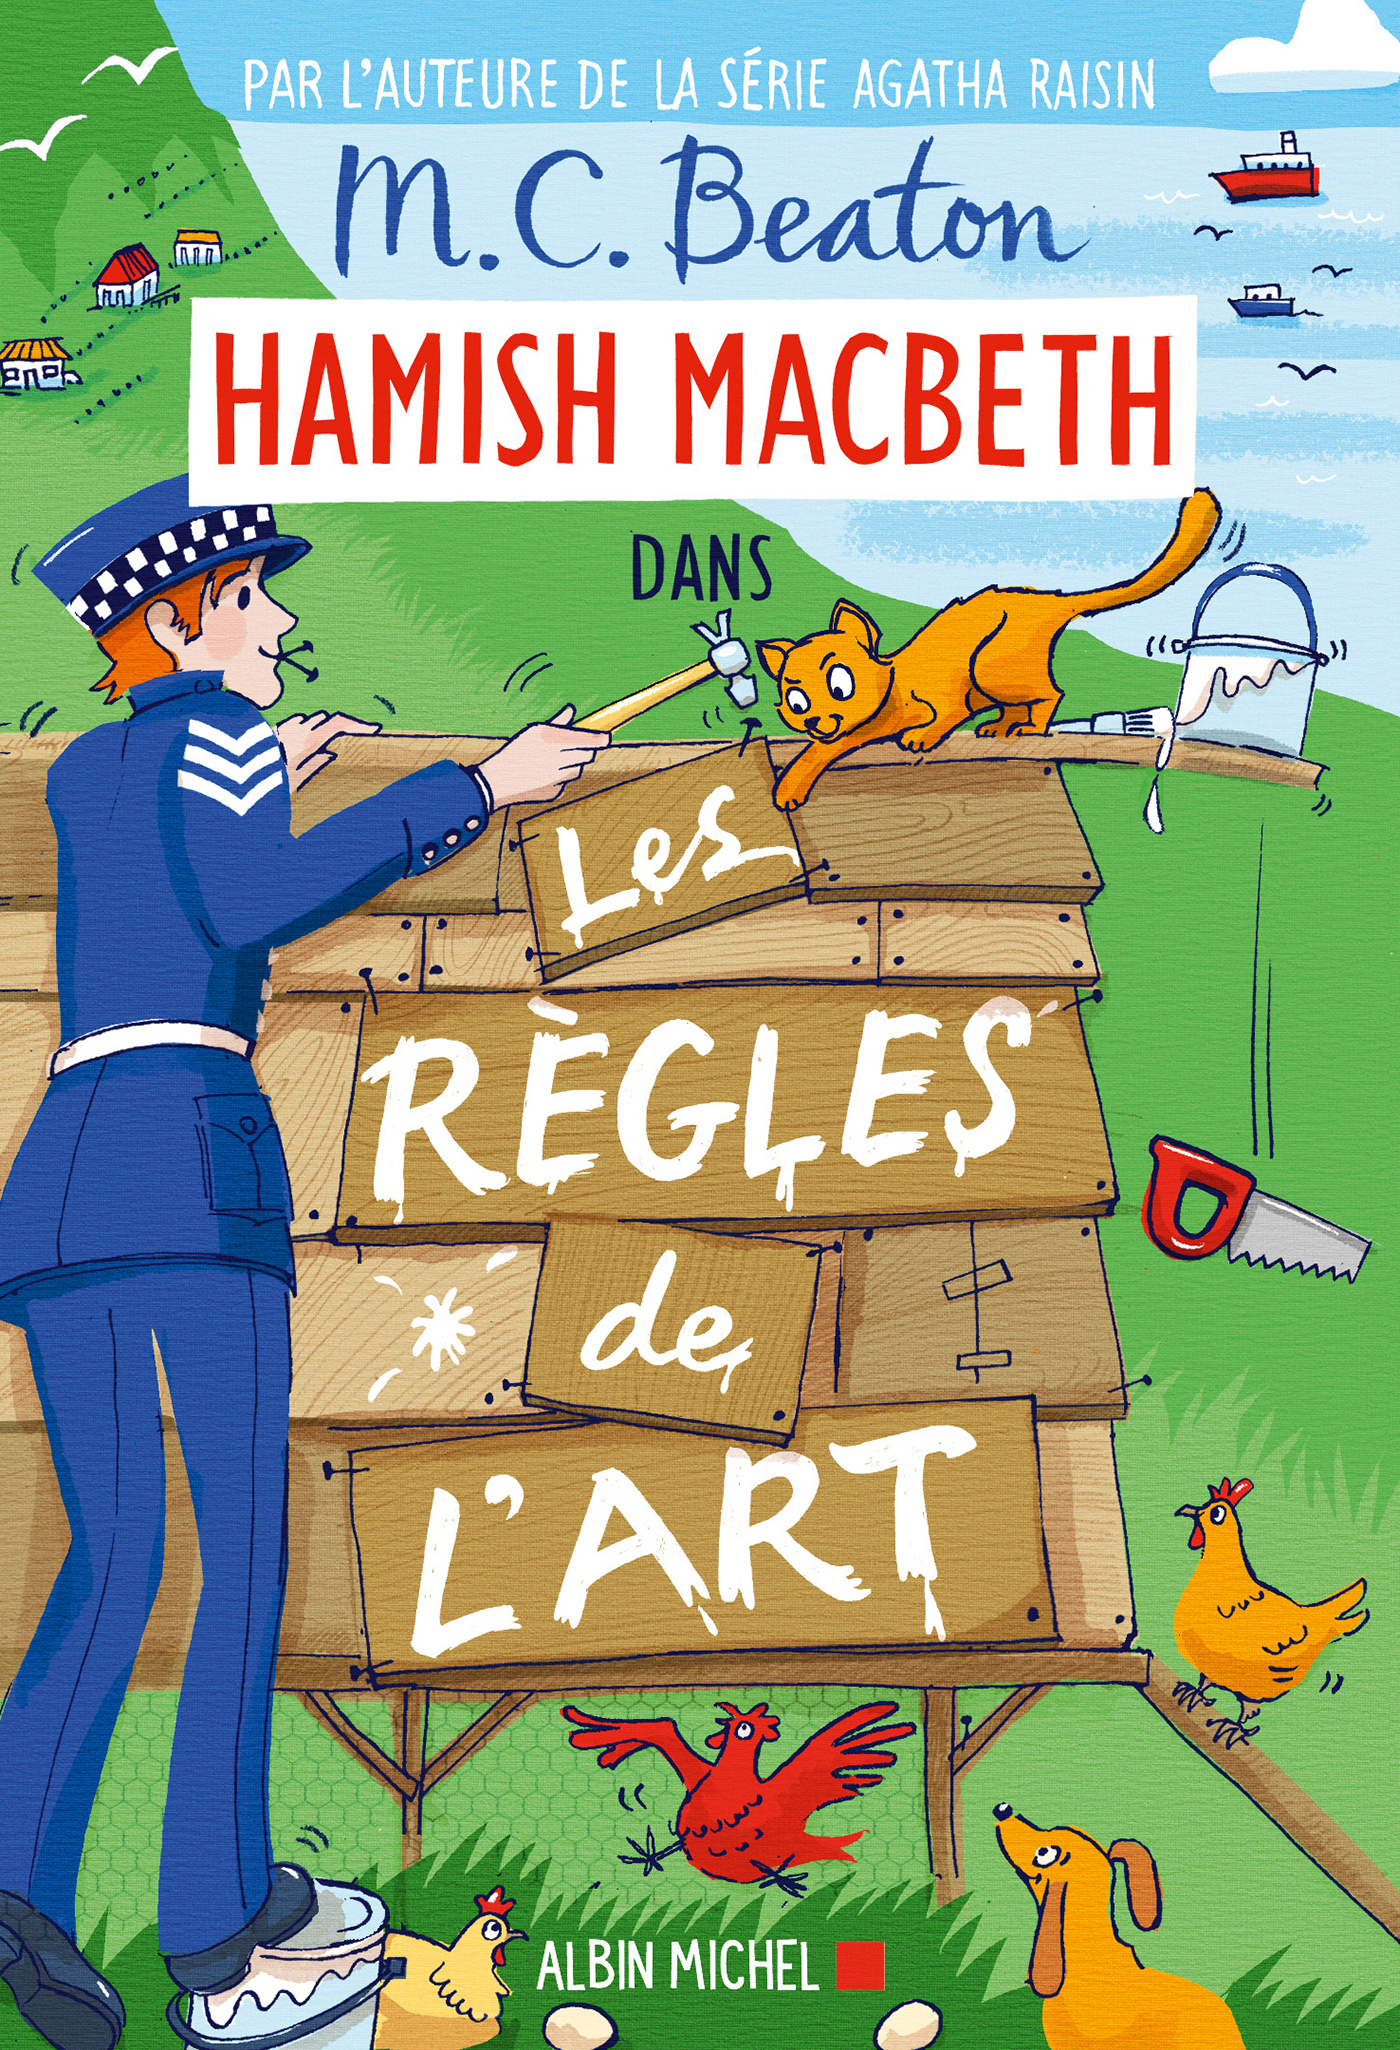 Couverture du livre Hamish Macbeth 21 - Les Règles de l'art